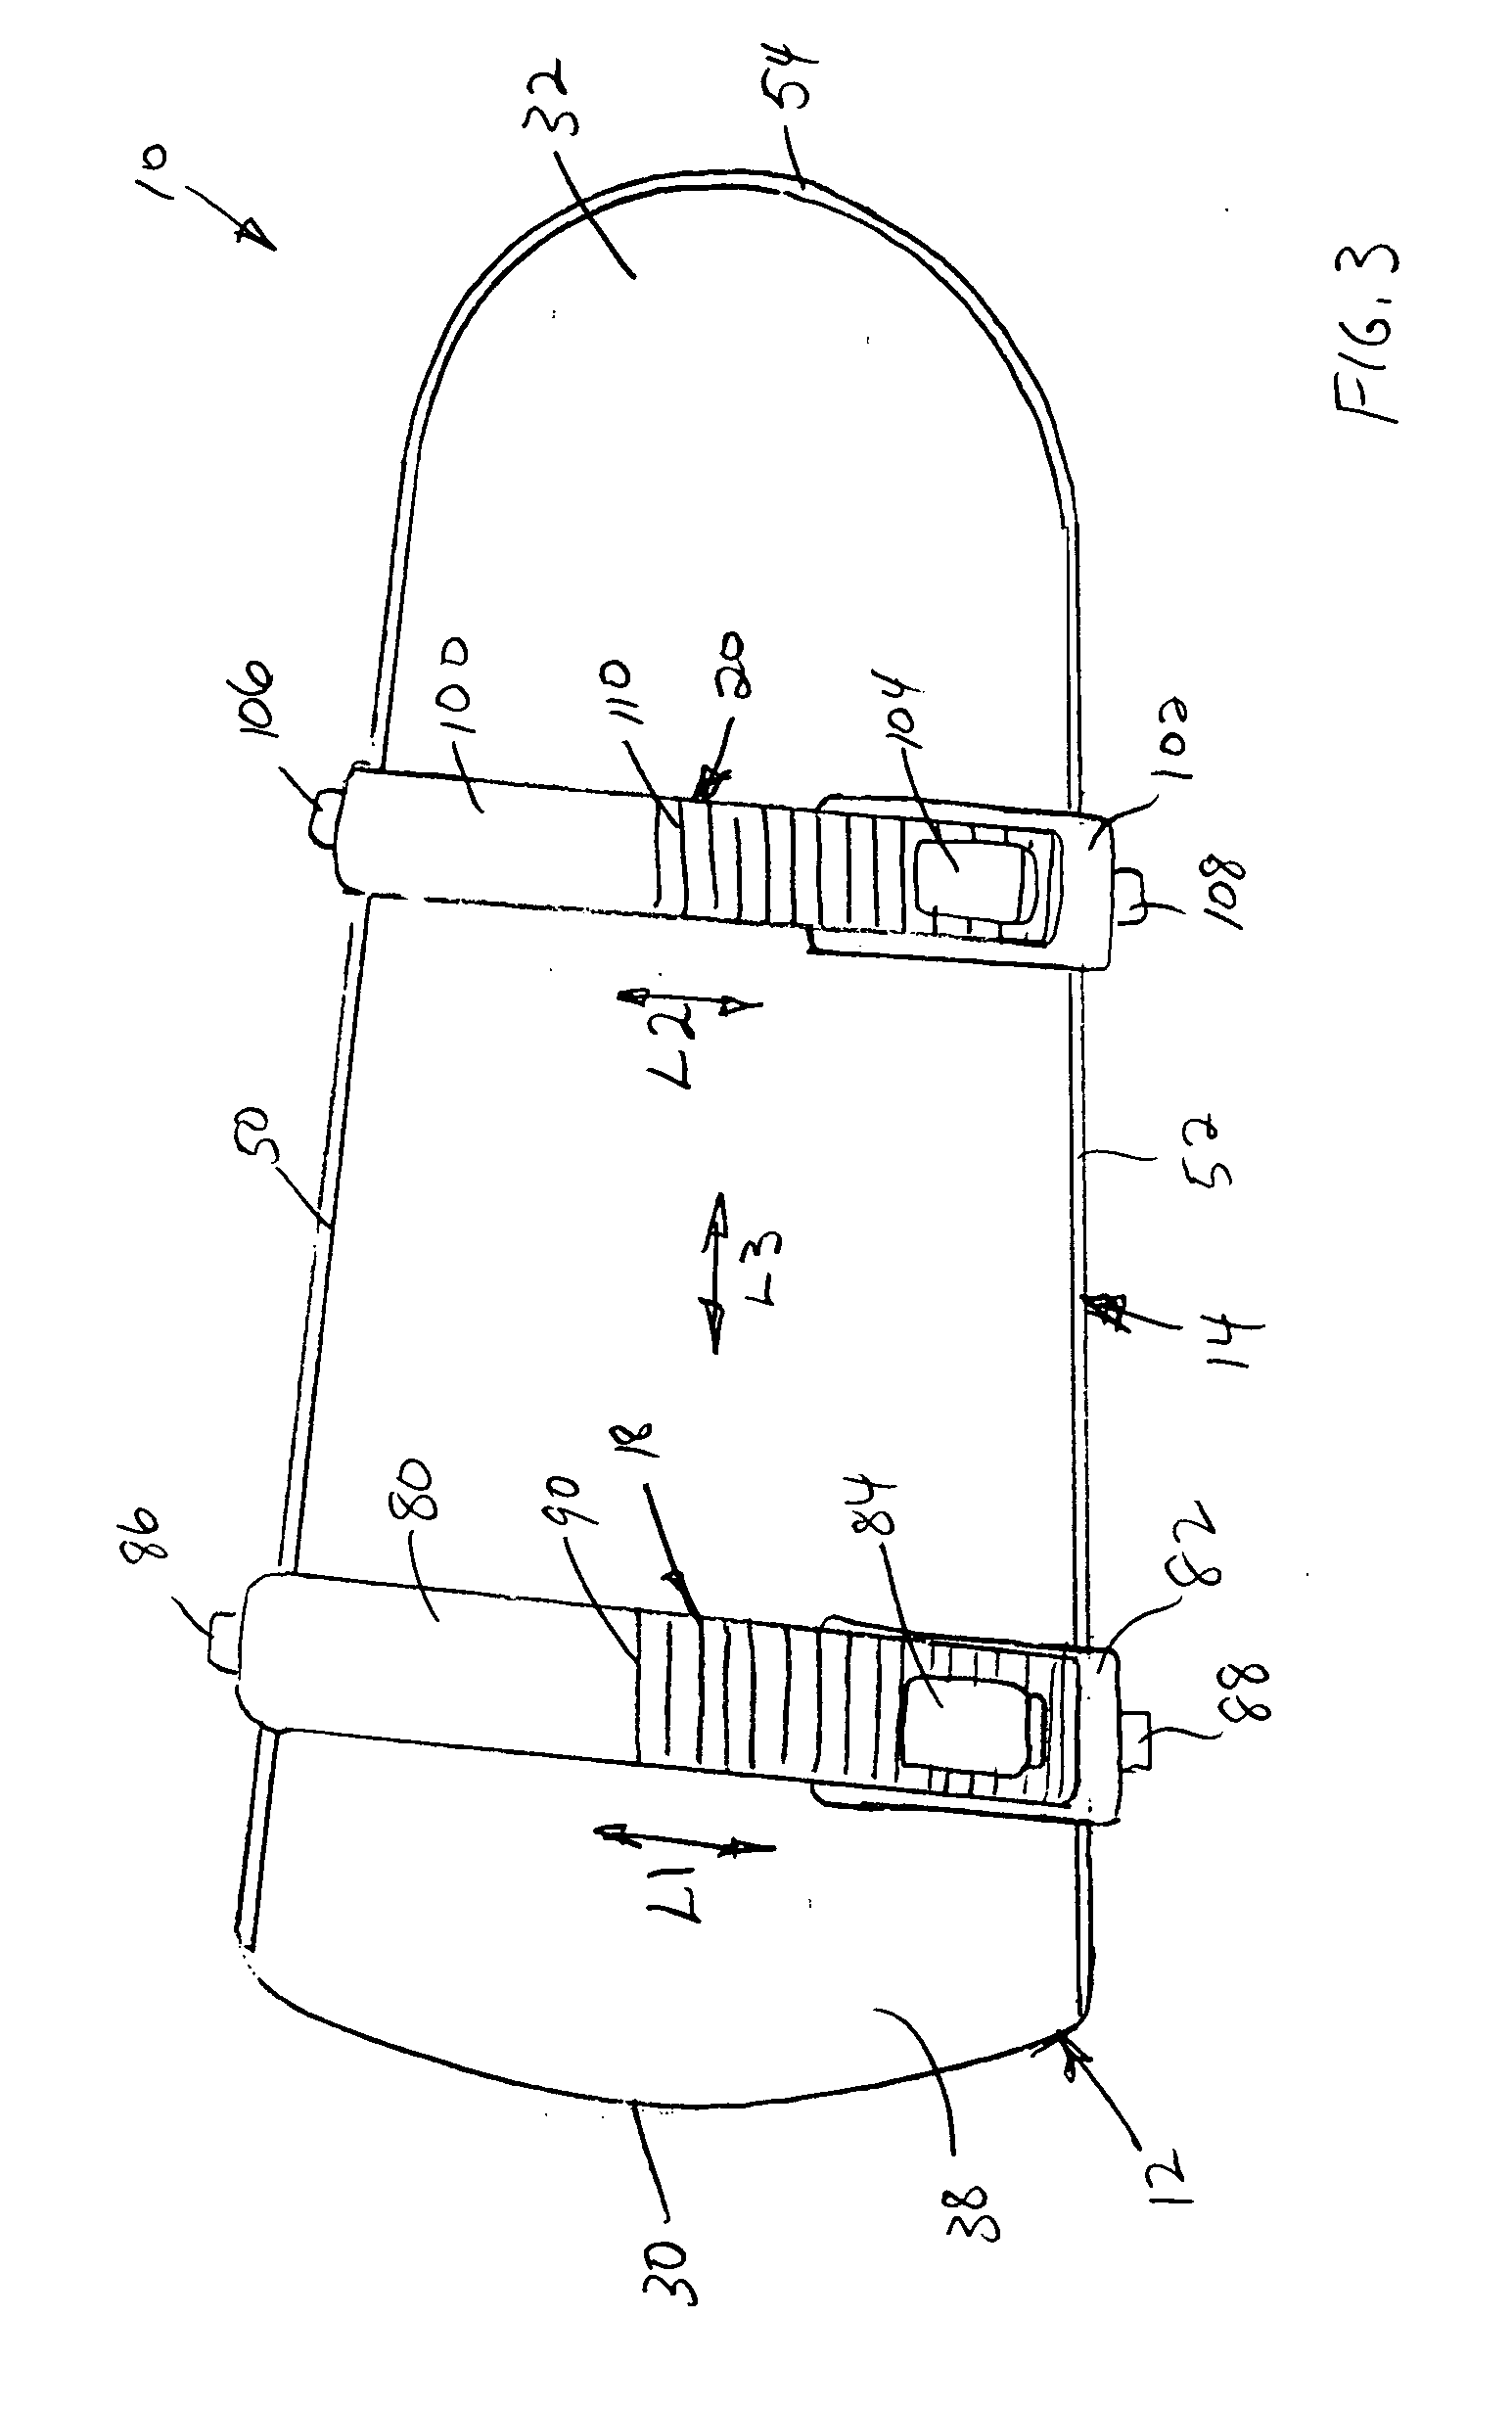 Mounting platform for construction stilt